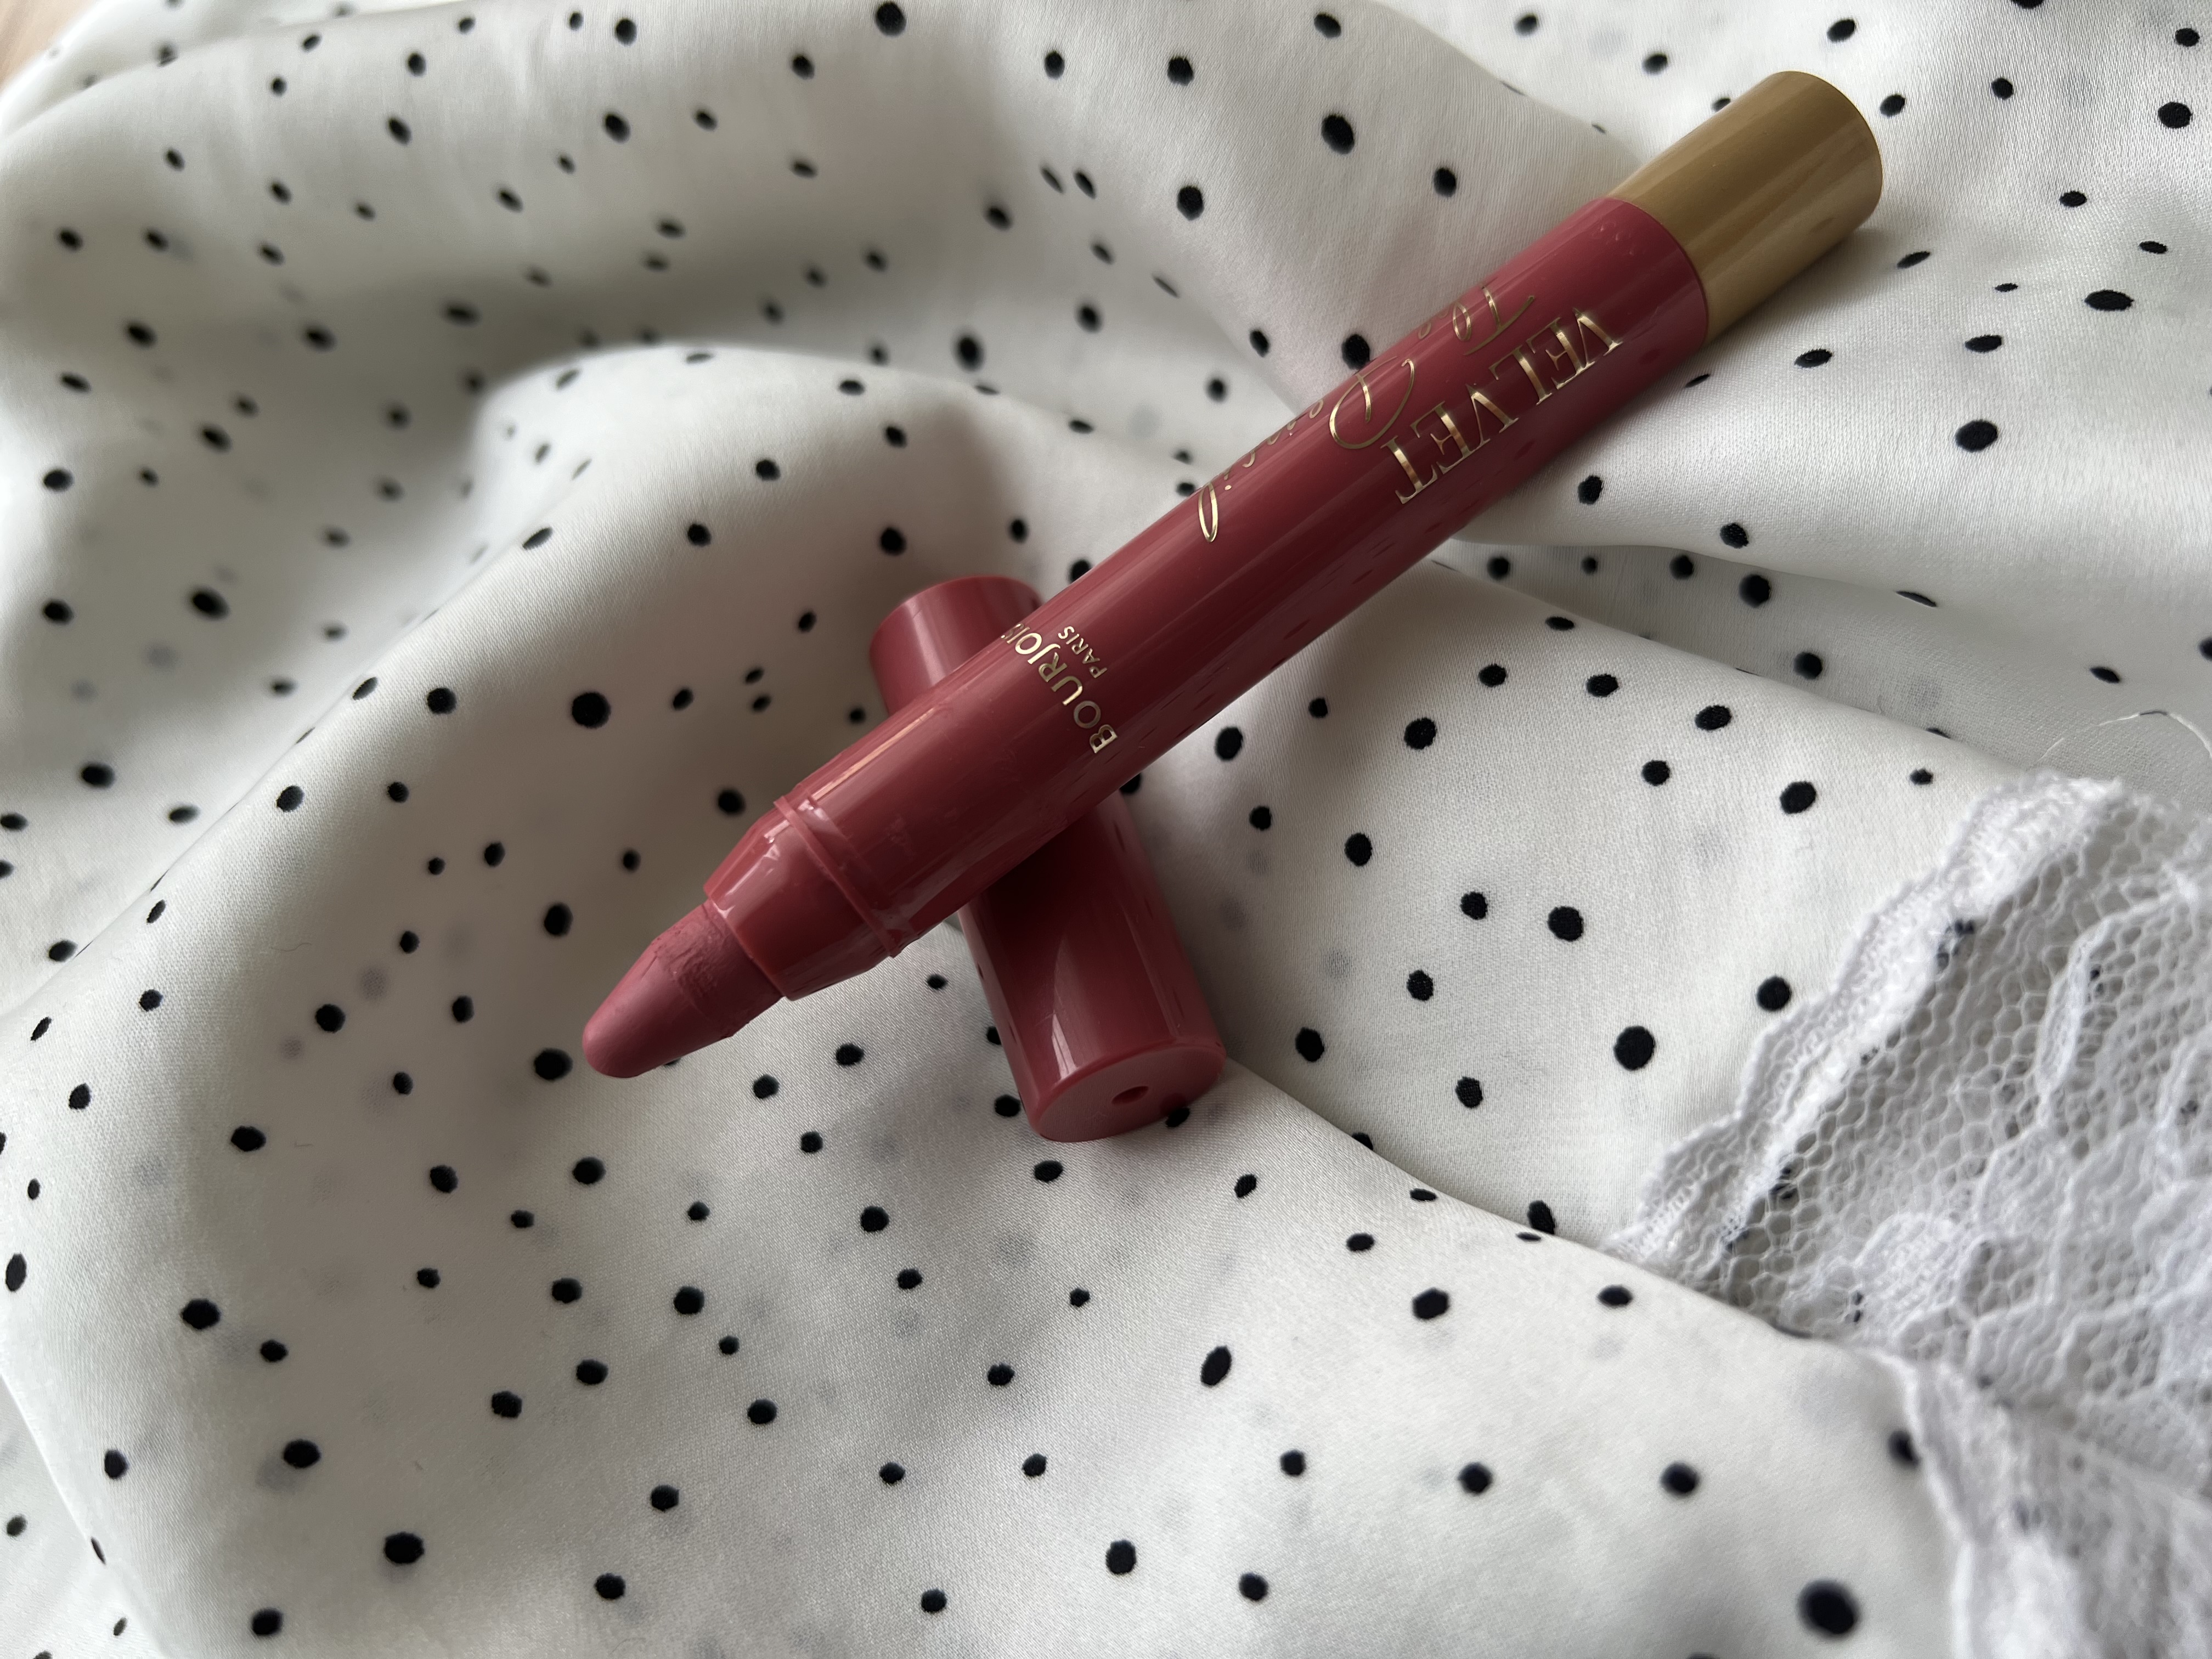 Bourjois Velvet The Pencil Lipstick